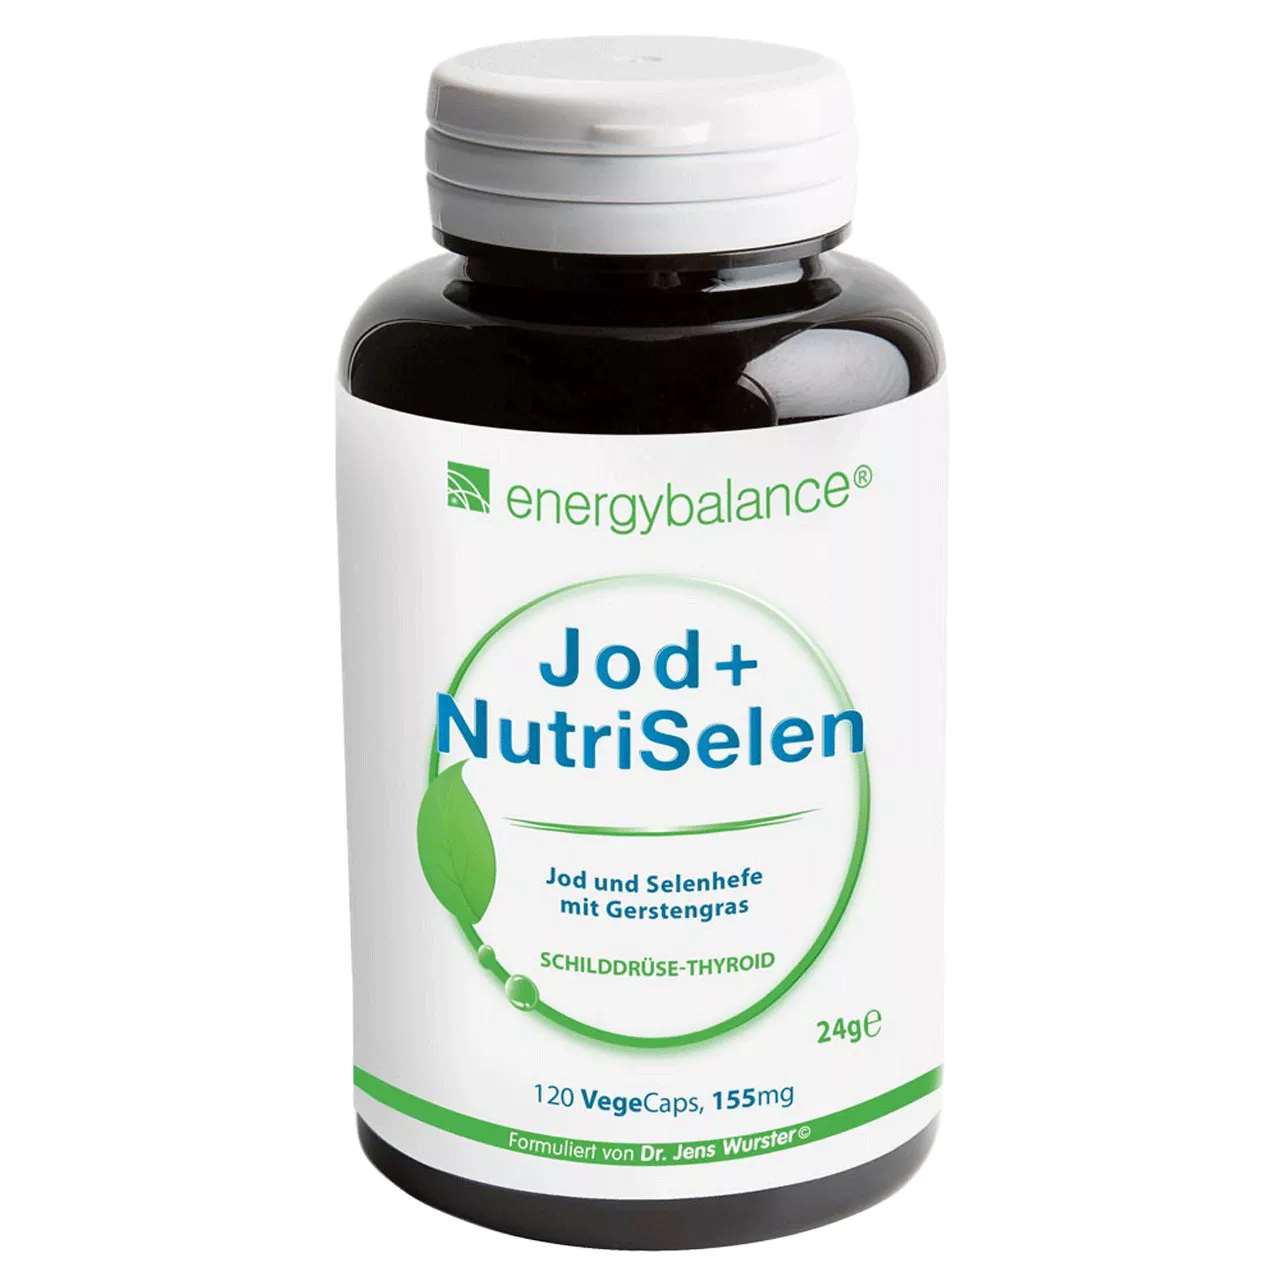 Jod + NutriSelen von Energybalance